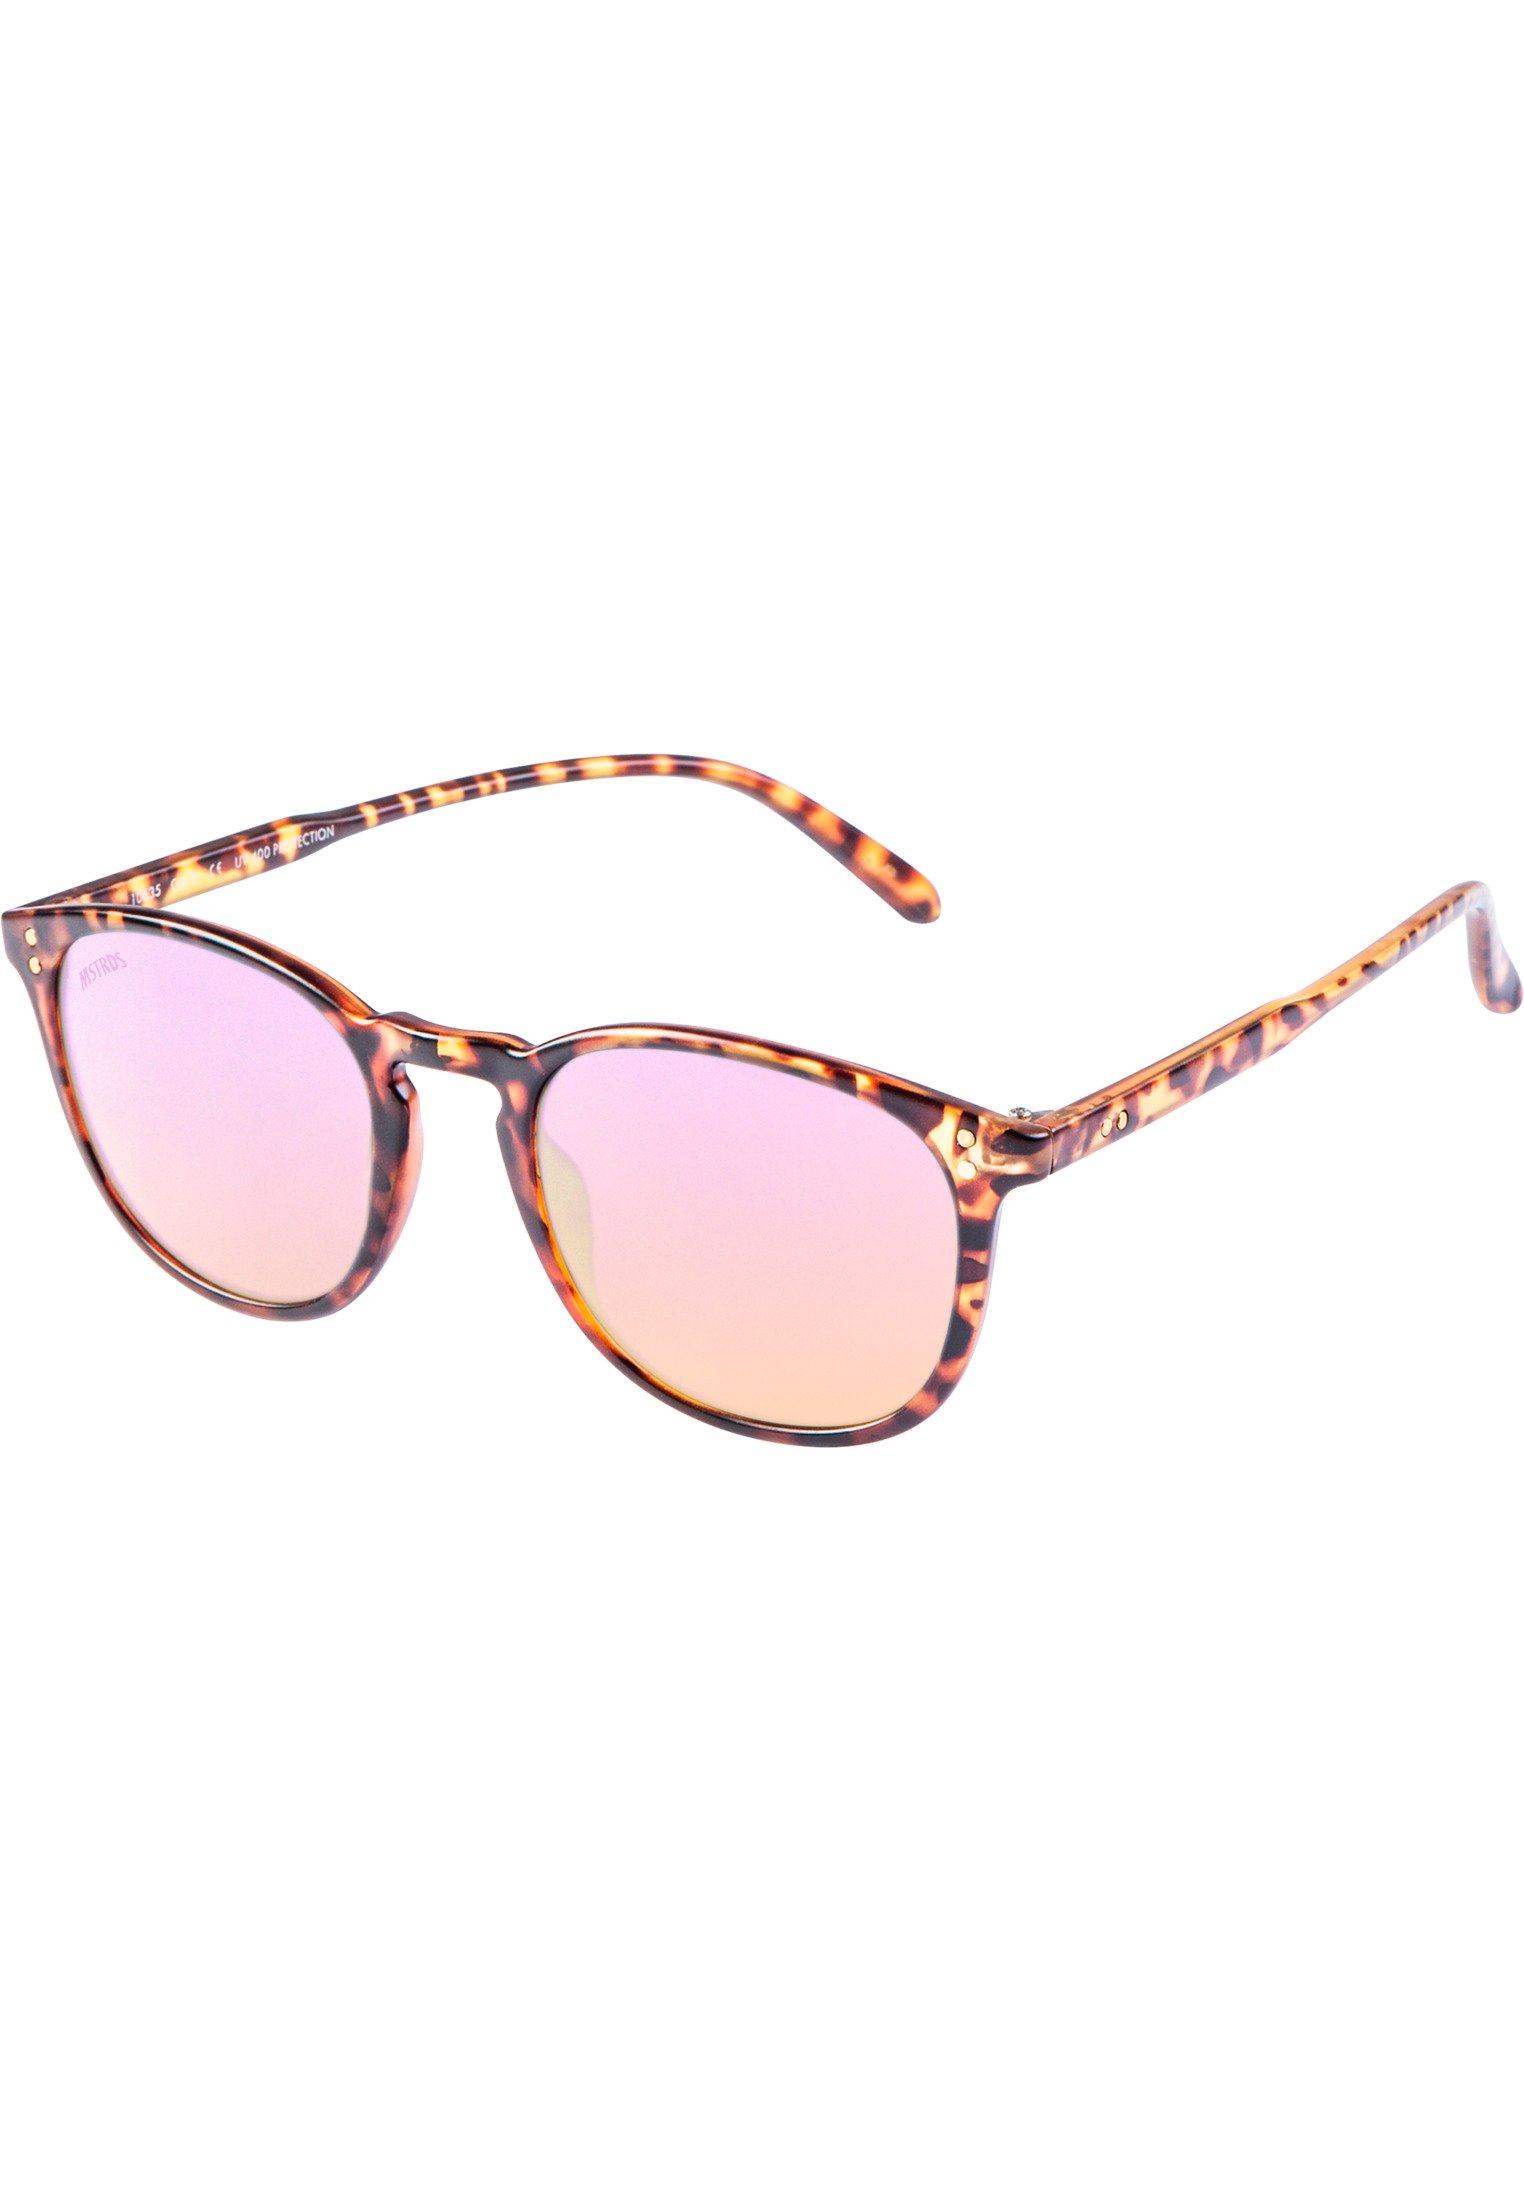 Sunglasses Arthur Youth havanna/rosé